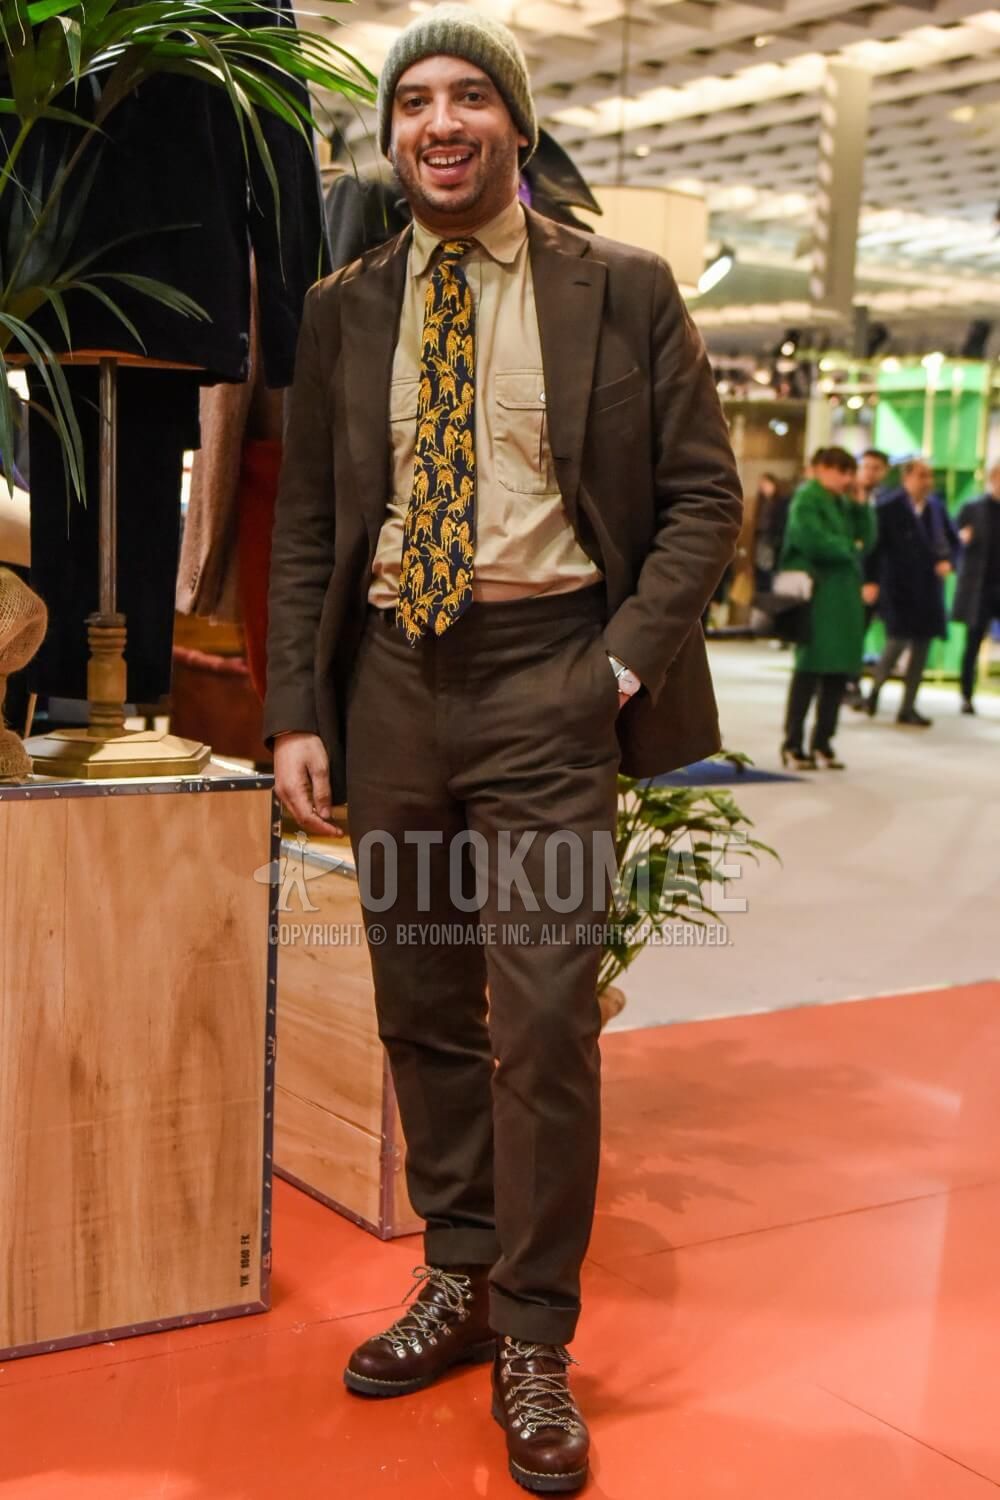 ブラウンスーツの粋な着こなし 2021最新 メンズファッションメディア Otokomaeotokomae 男前研究所